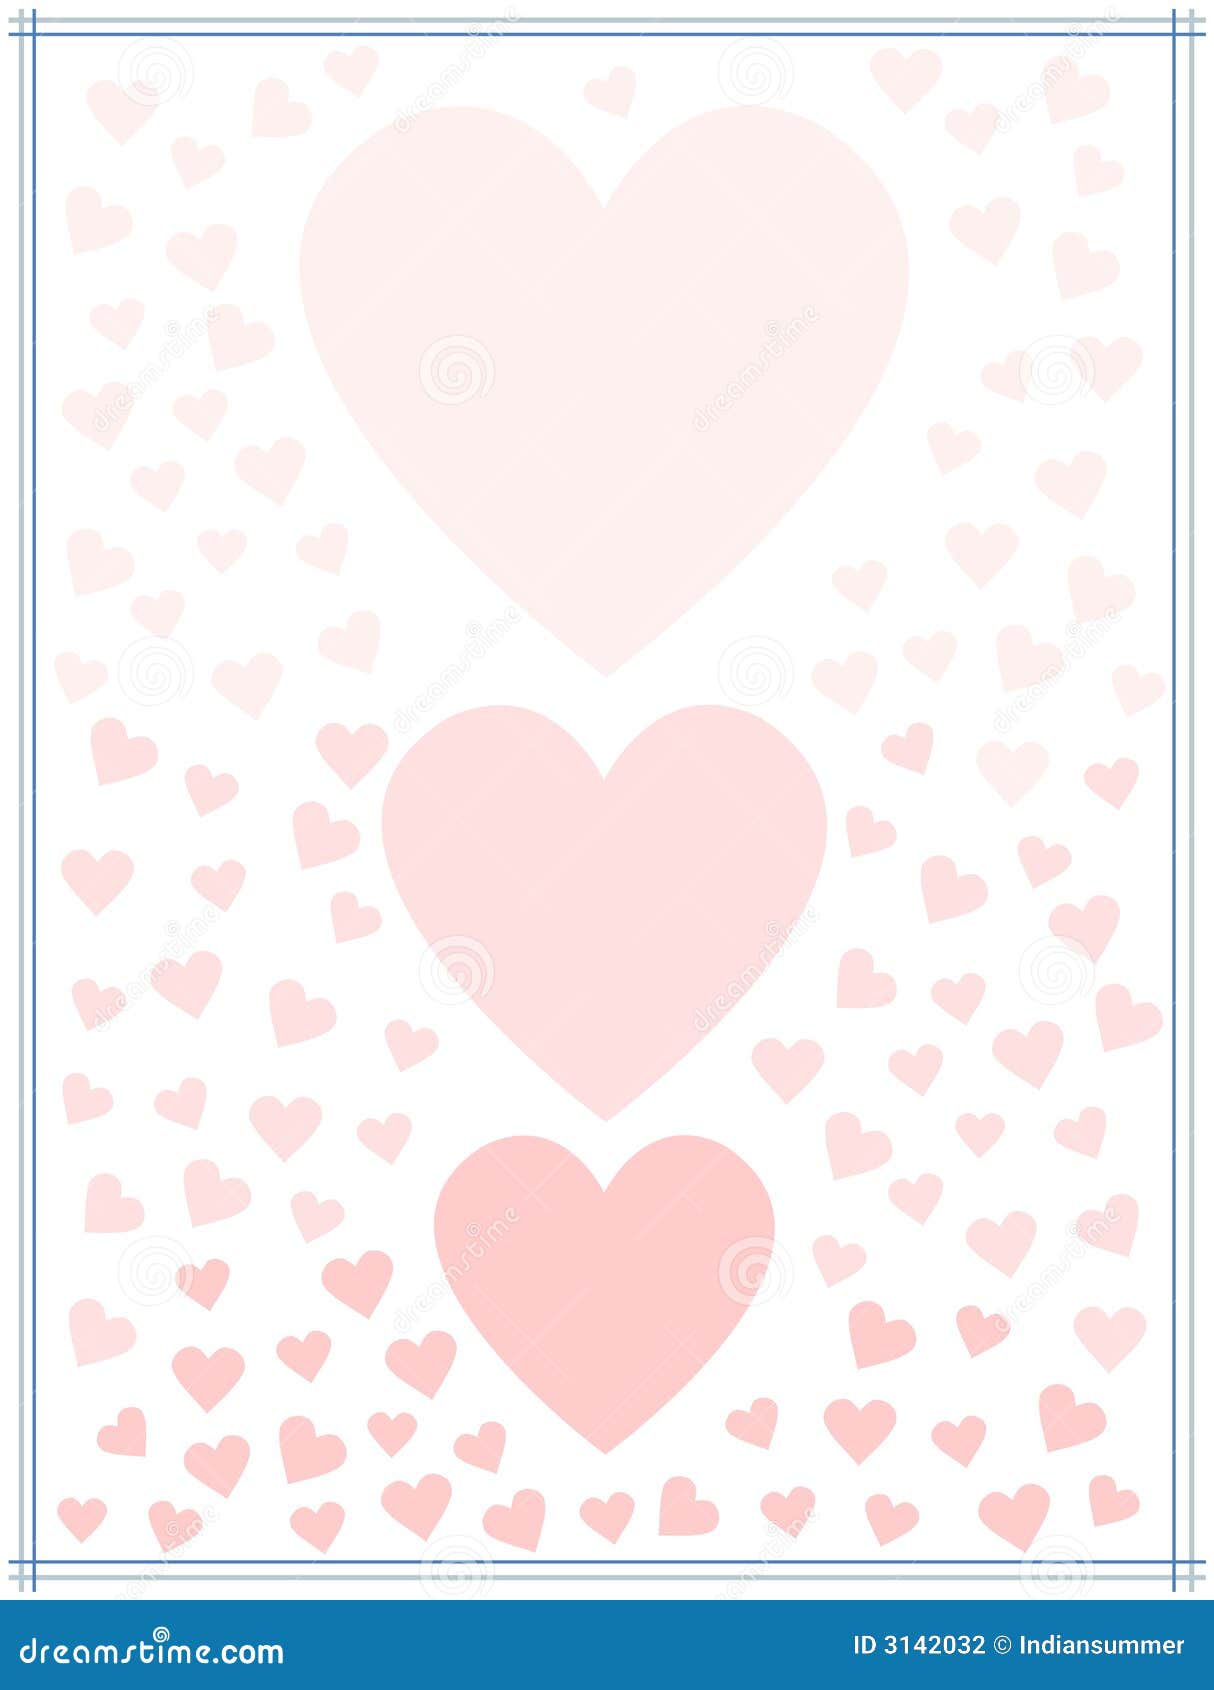 Love Theme Hd Background  Valentine background Valentines wallpaper  Valentine picture